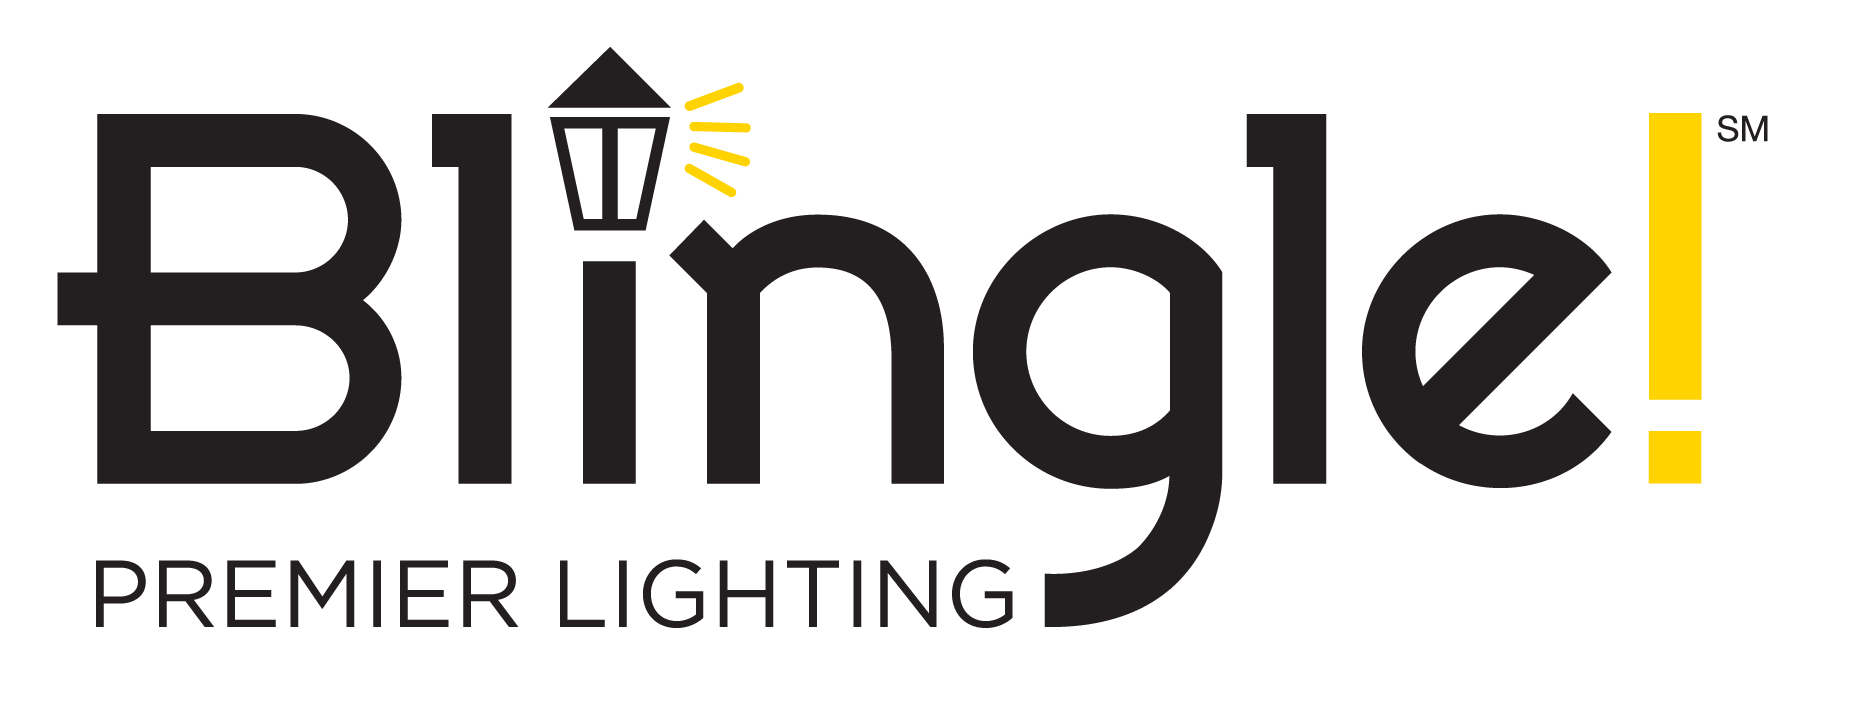 Blingle Premier Lighting of Omaha